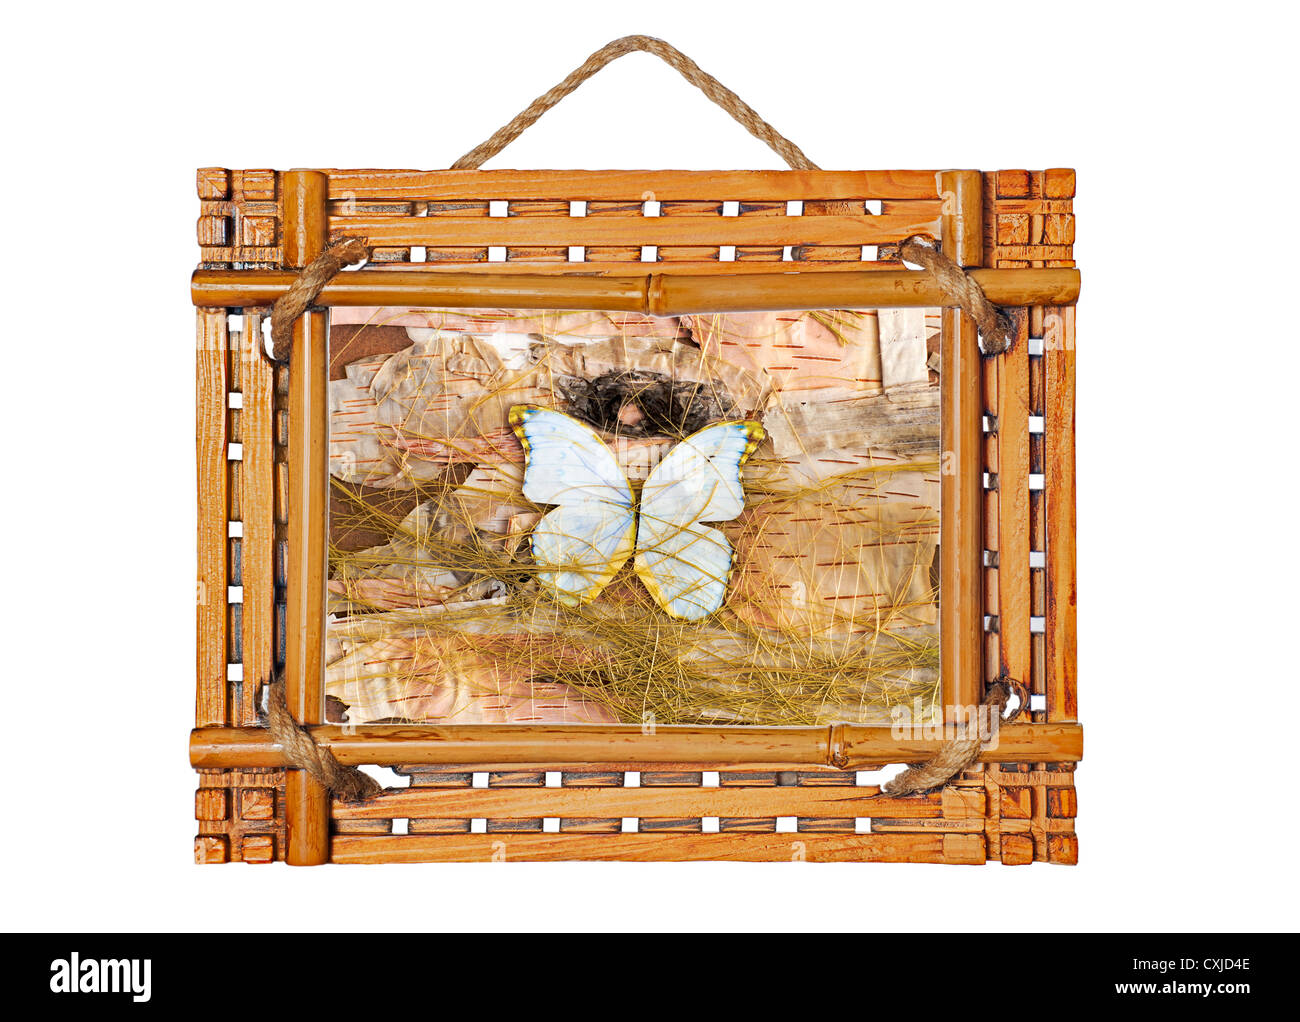 Cadre photo bambou avec composition abstraite de papillons, de paille et d'écorce de bouleau isolé sur fond blanc Banque D'Images